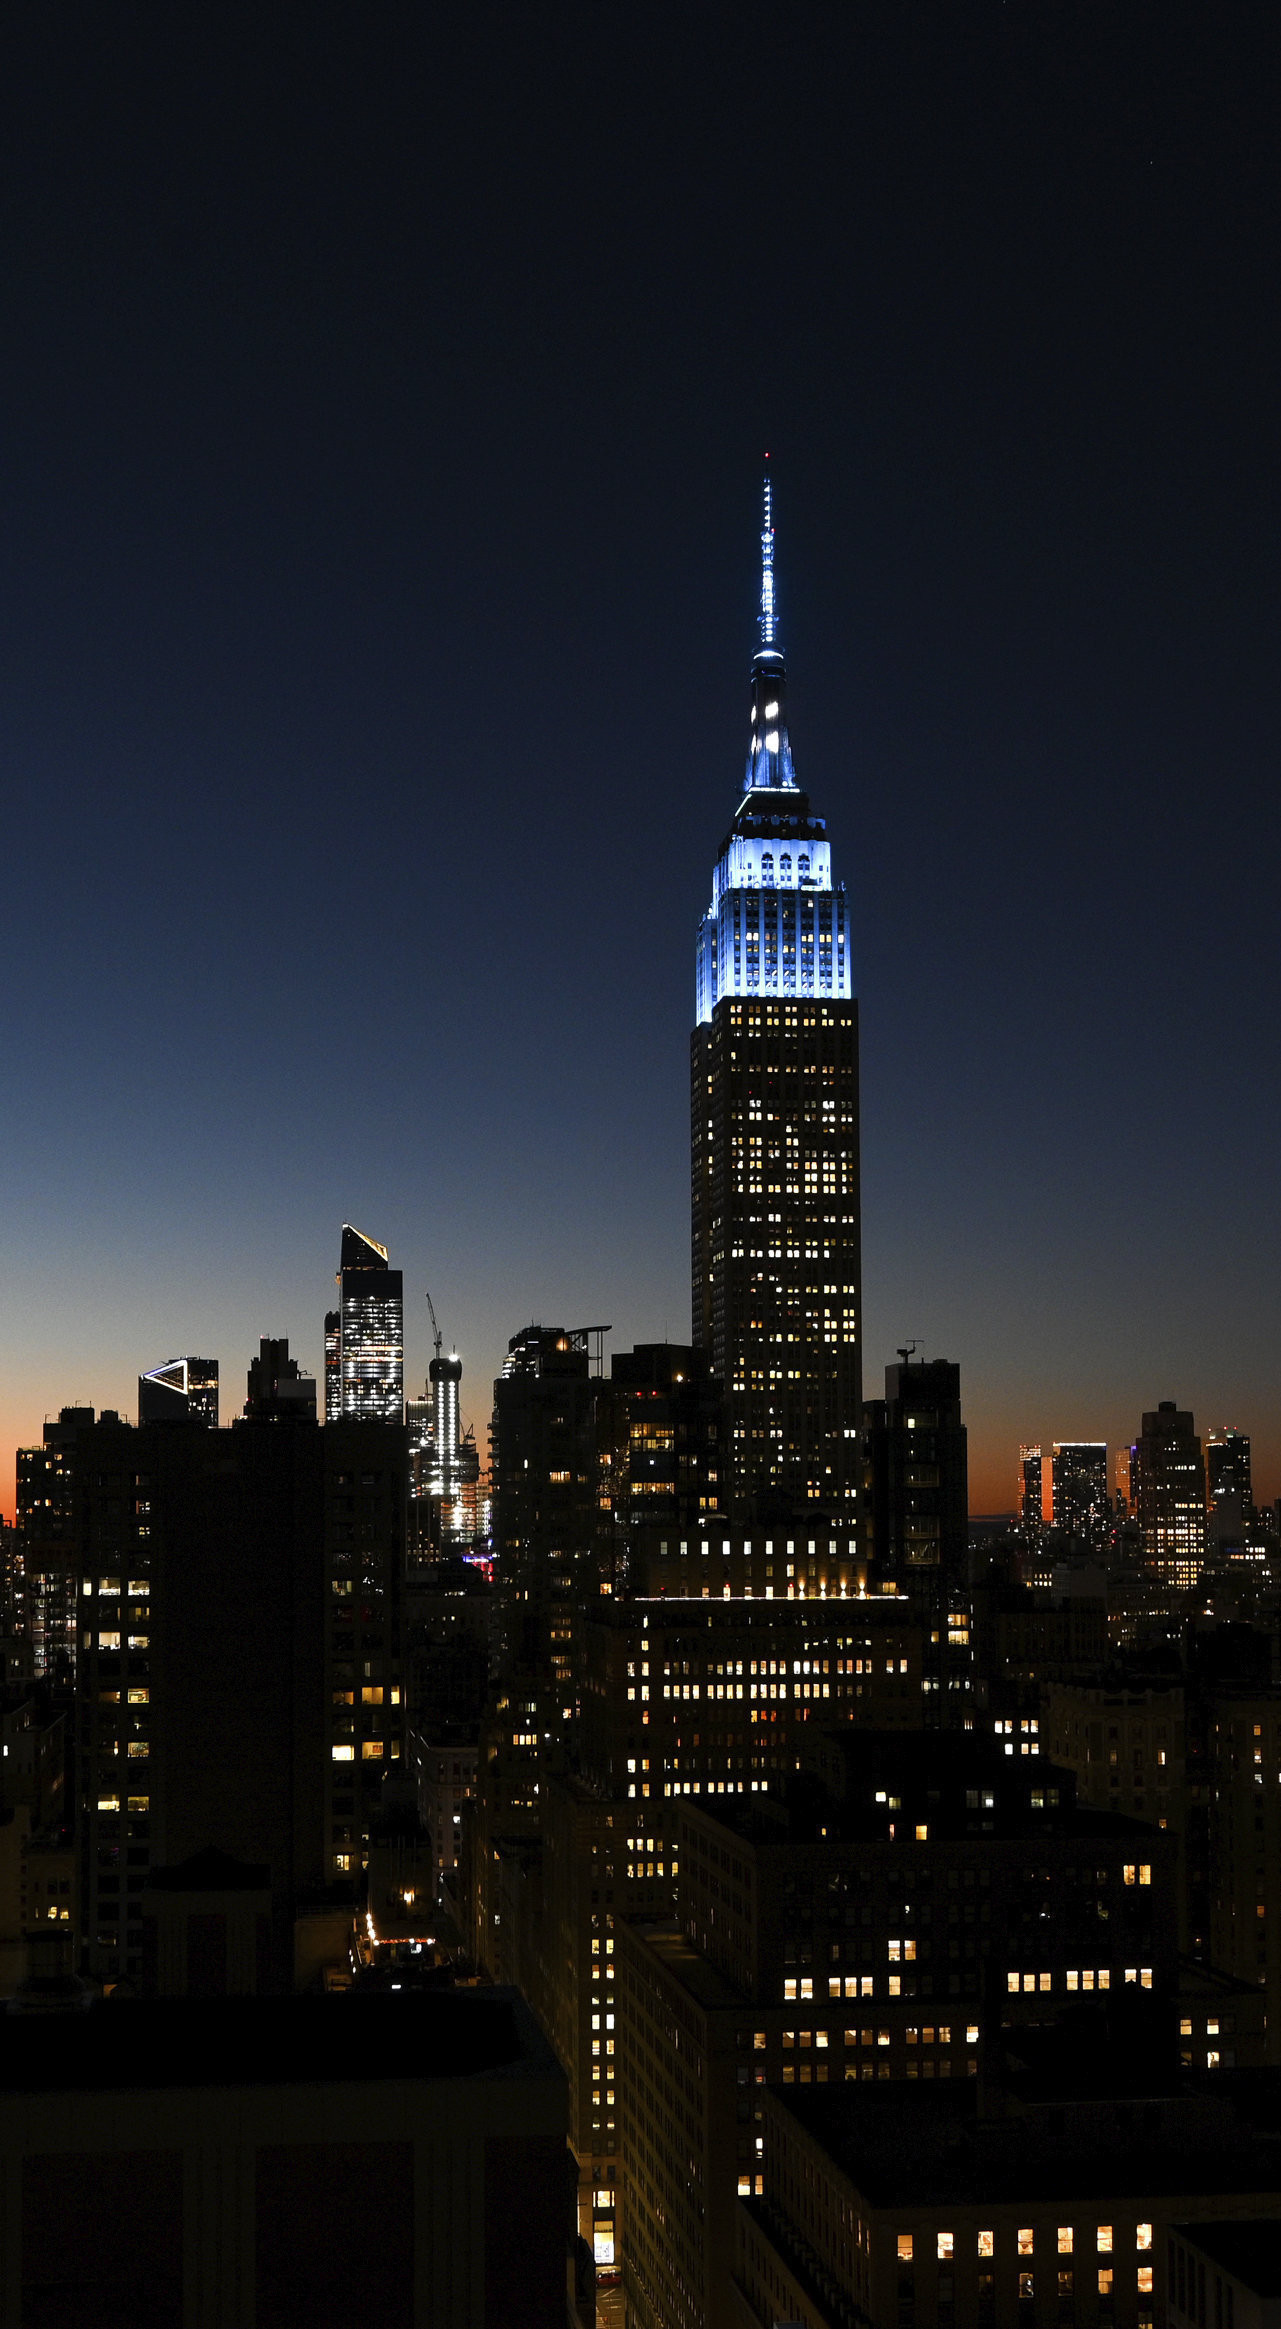 New York, 2020. október 9.
Kék fénnyel világították meg a New York-i Empire State Building épületét 2020. október 8-án, John Lennon, a Beatles egykori brit popzenekar meggyilkolt tagja születésének 80. évfordulója alkalmából. John Lennon 1940. október 9-én született Liverpoolban.
MTI/AP/Evan Agostini